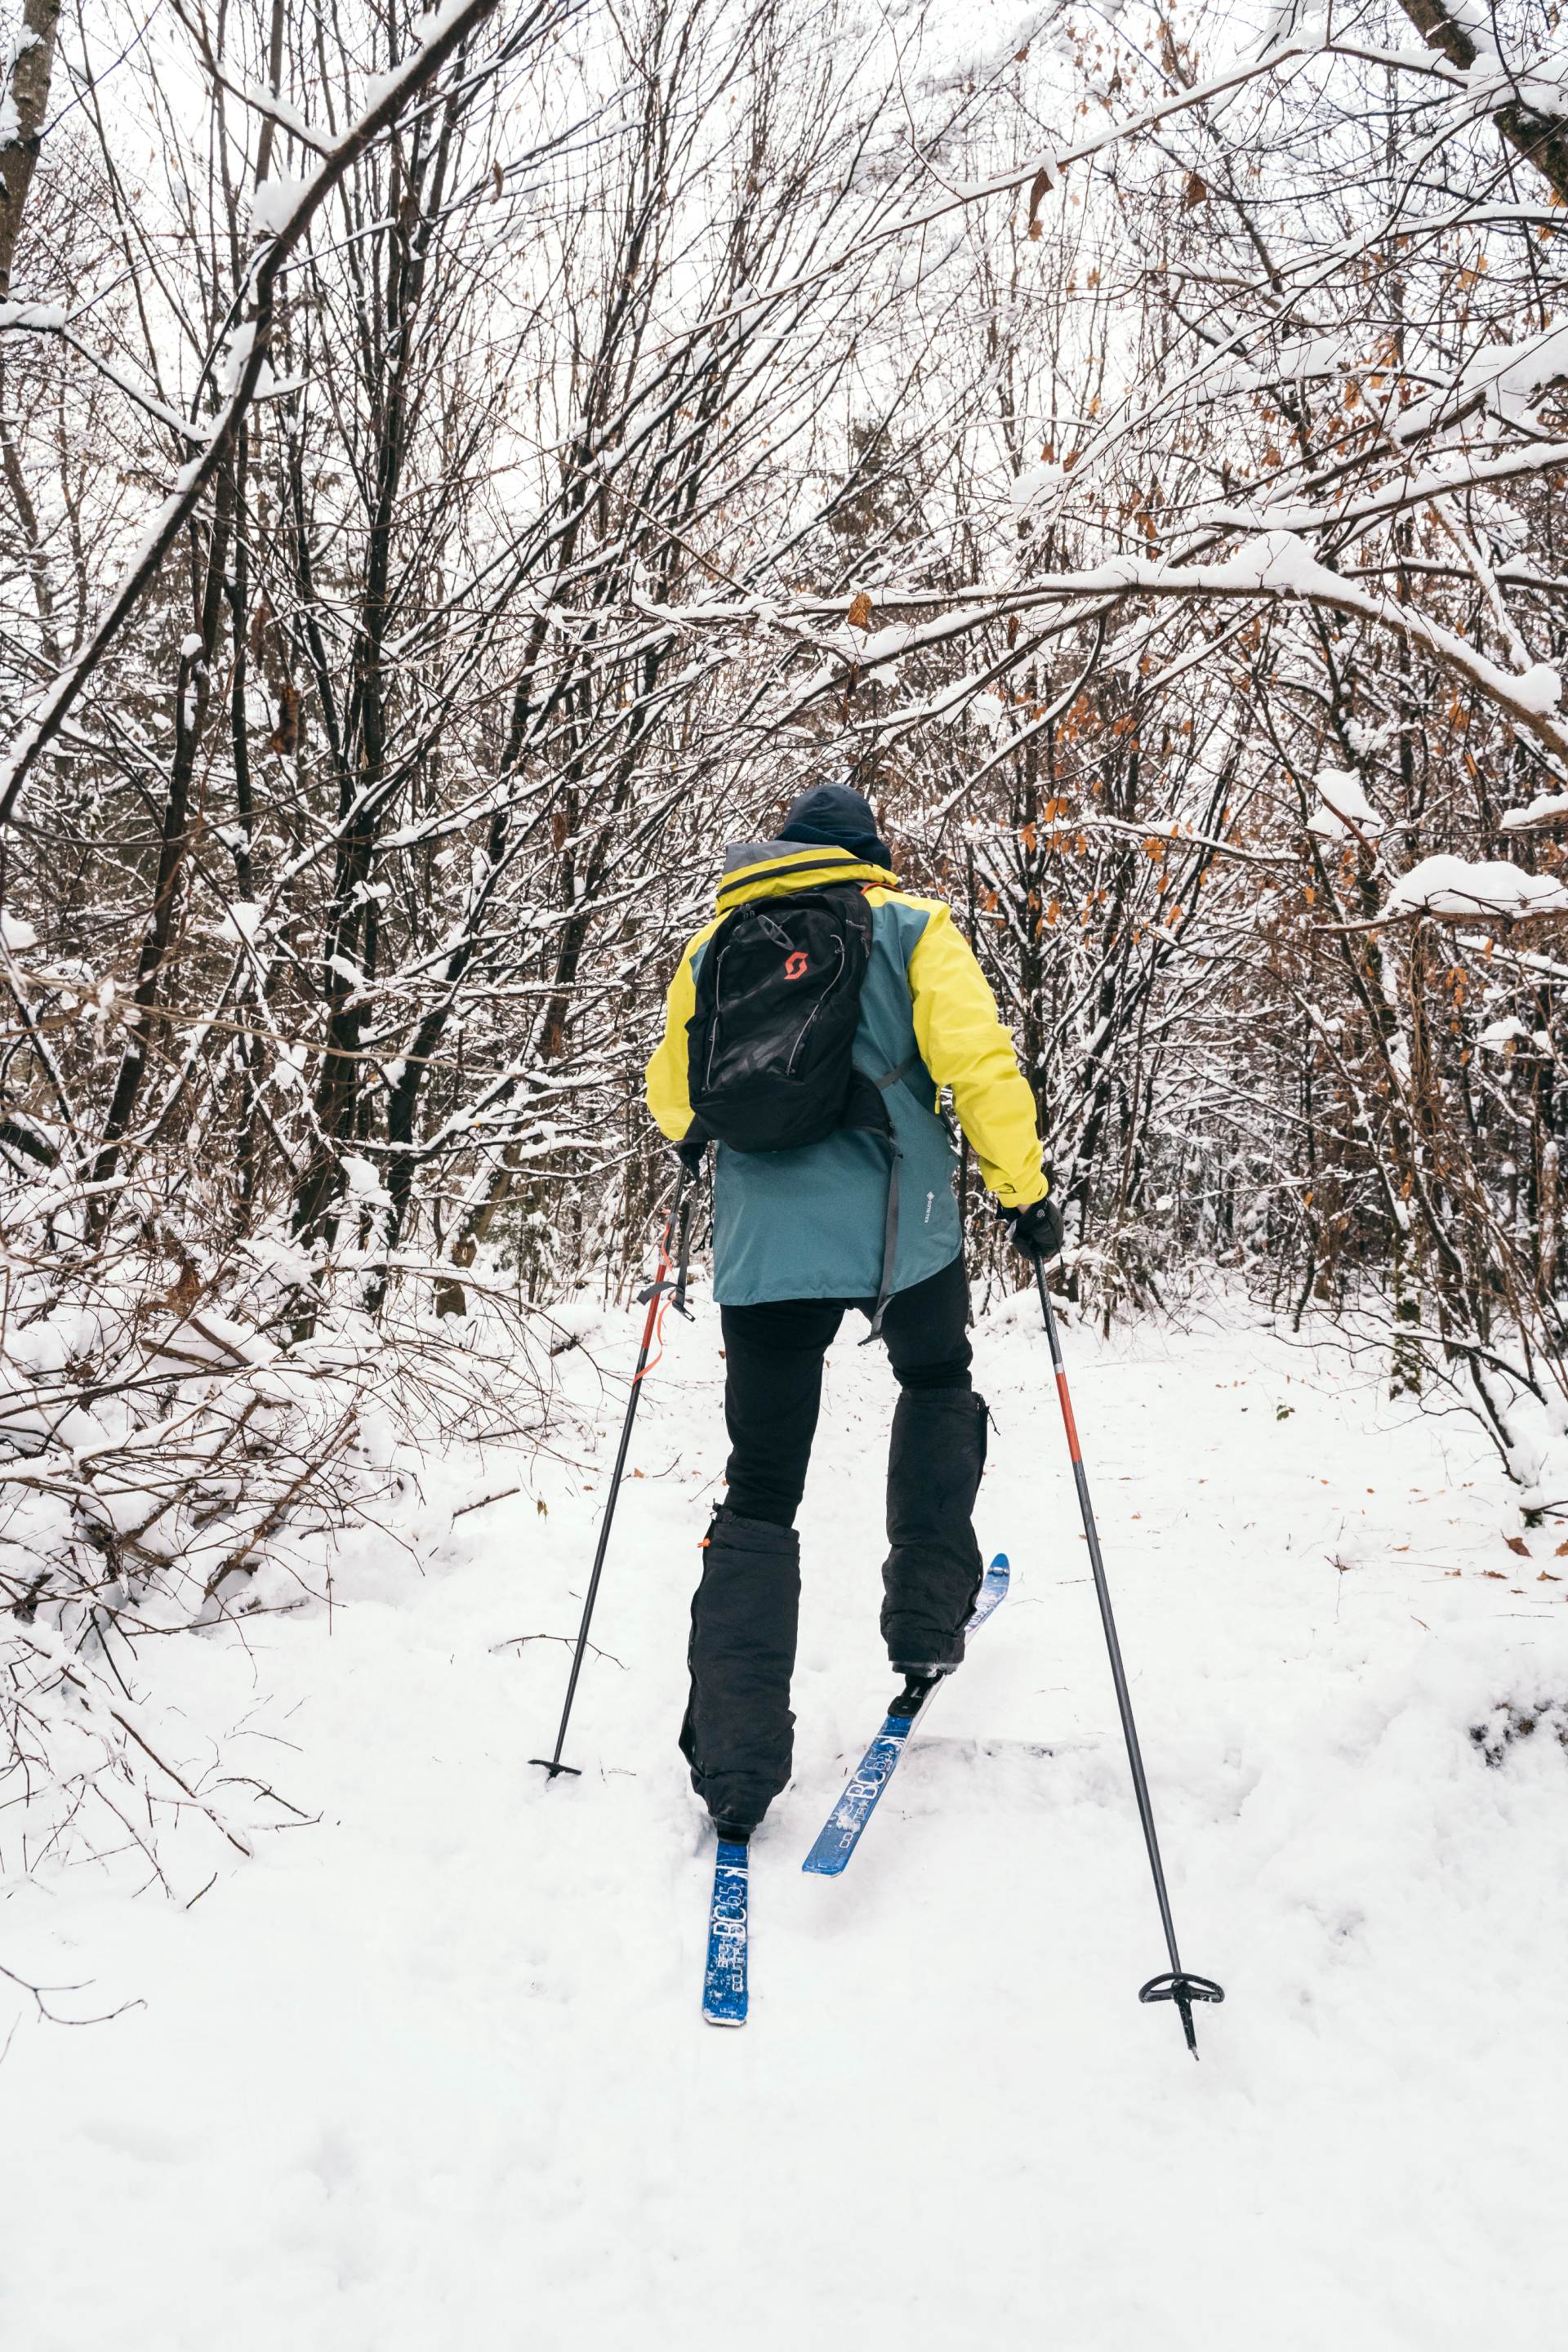 Sebastian Copeland op zijn rug gezien op ski’s in een besneeuwd bos.